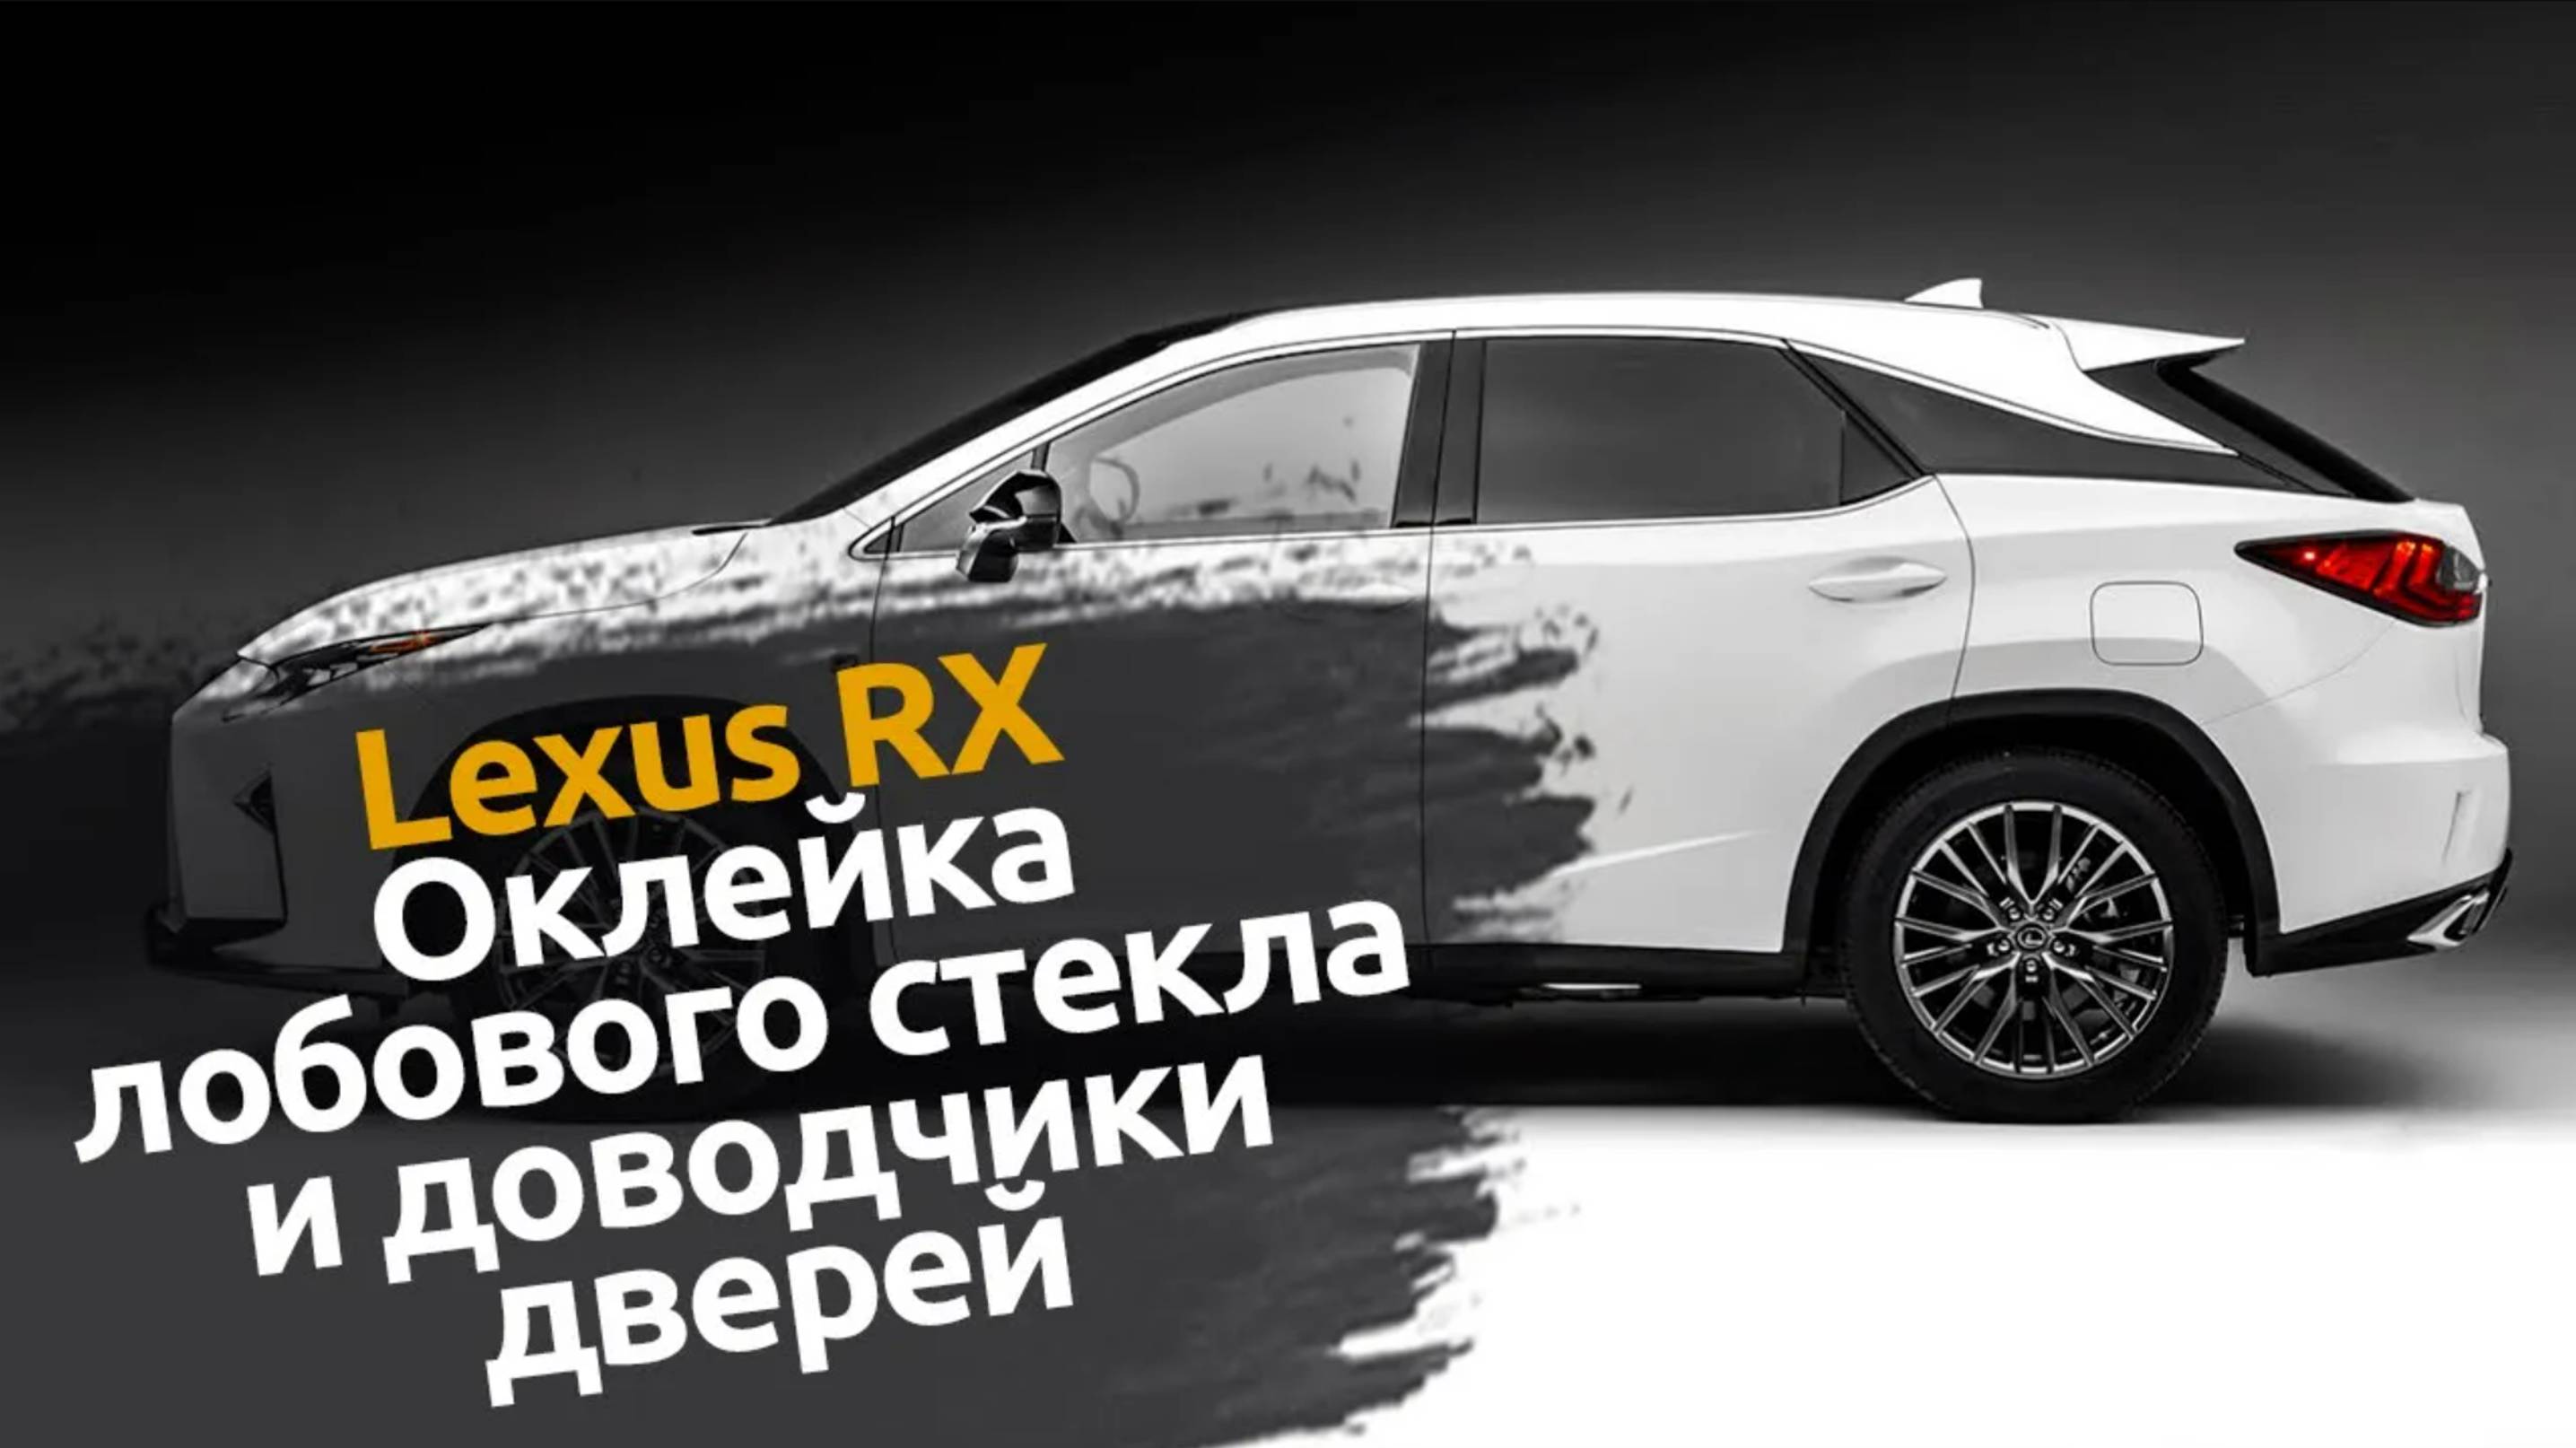 Lexus RX NEW | Установили доводчики дверей и оклеили защитной пленкой